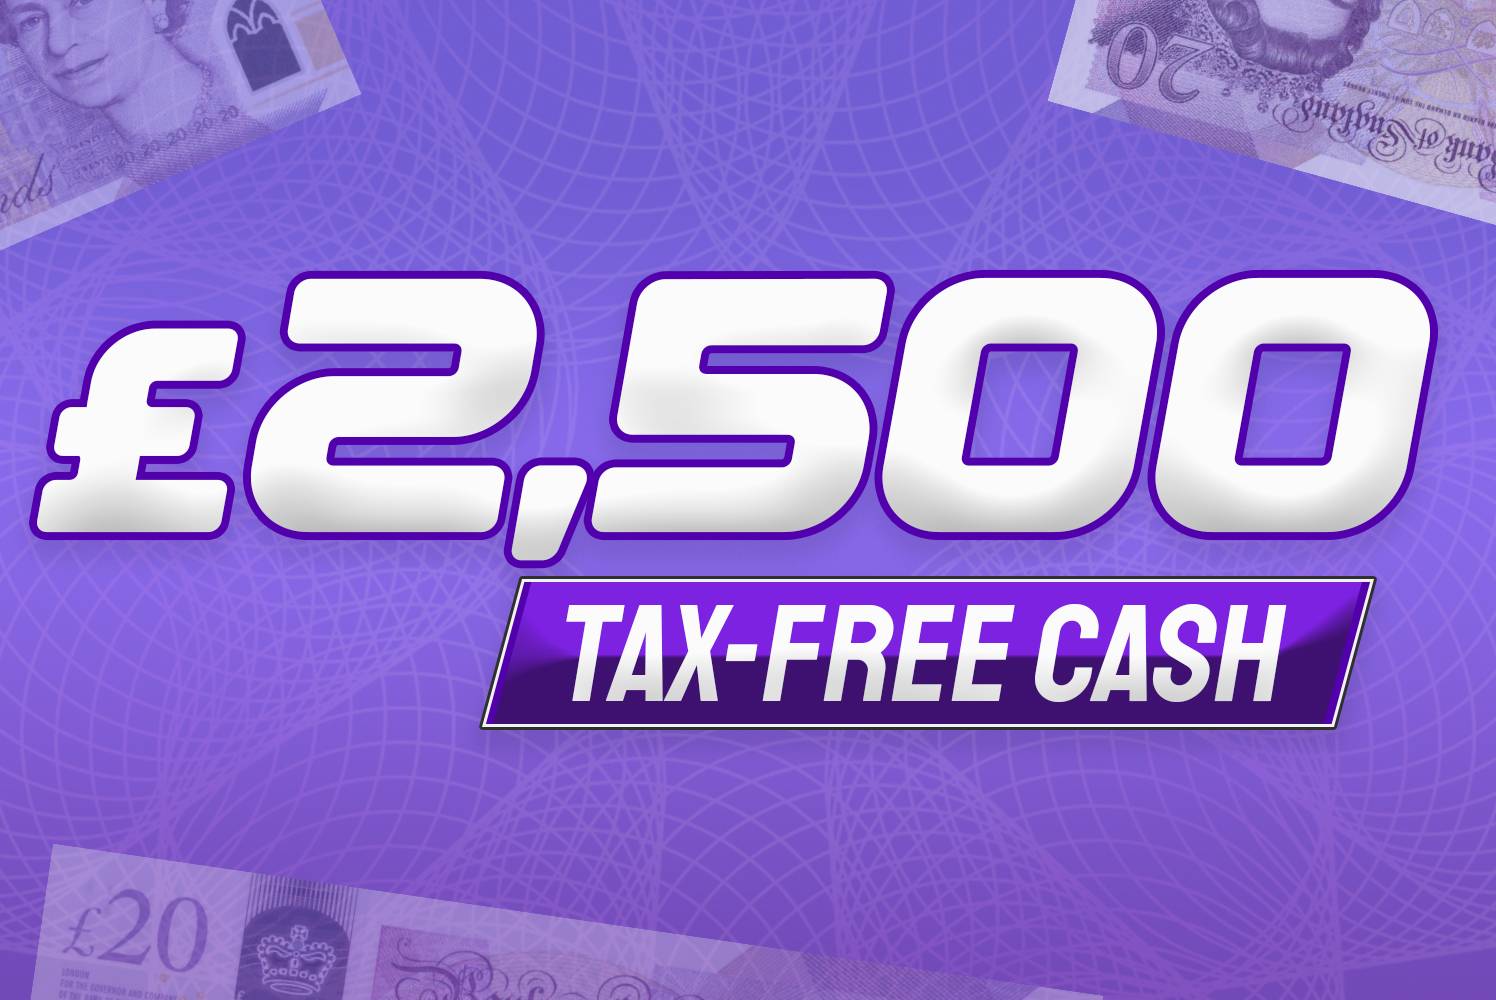 £2,500 Tax Free Cash